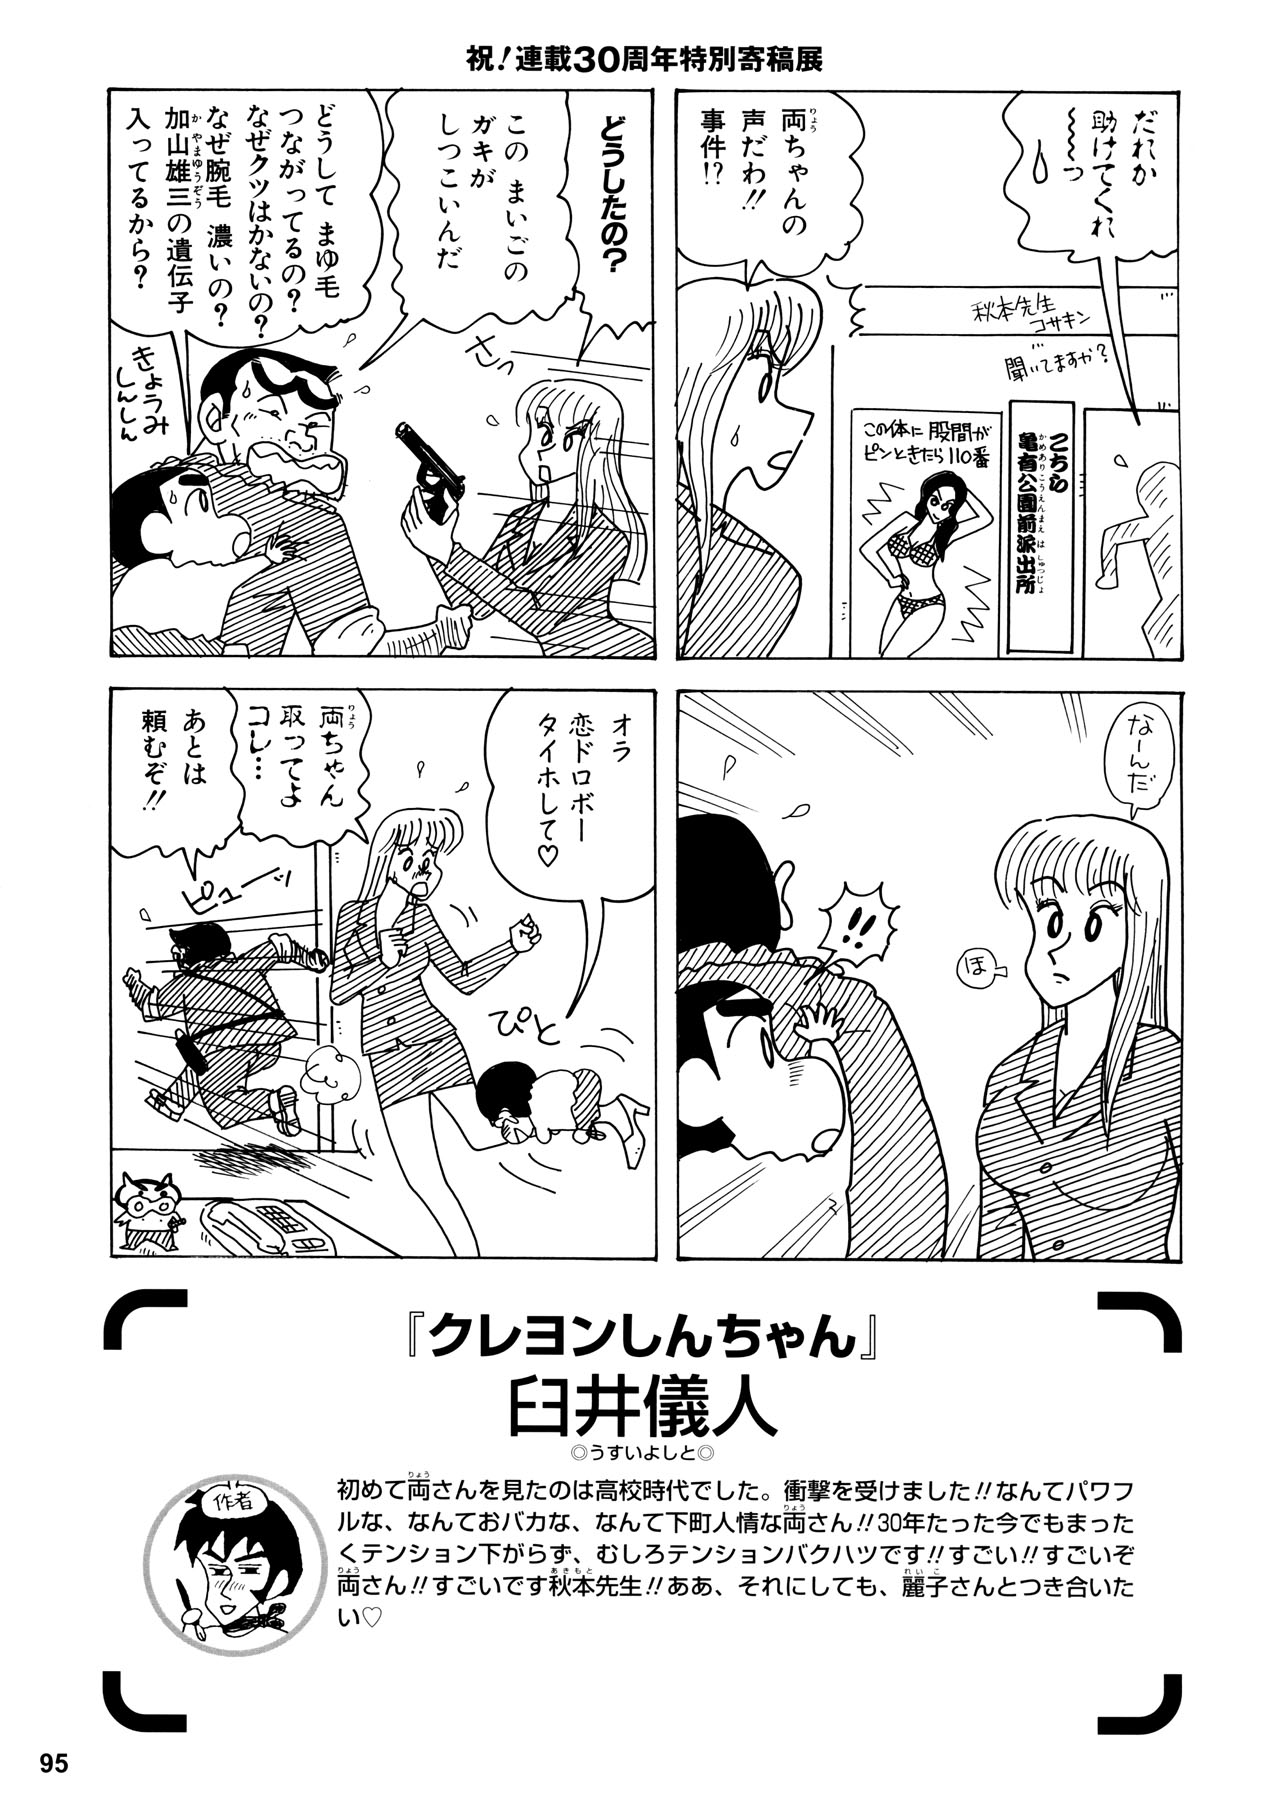 こち亀 に クレヨンしんちゃん が 臼井先生が描く両さんと麗子さんも登場 ザ マンガブログ